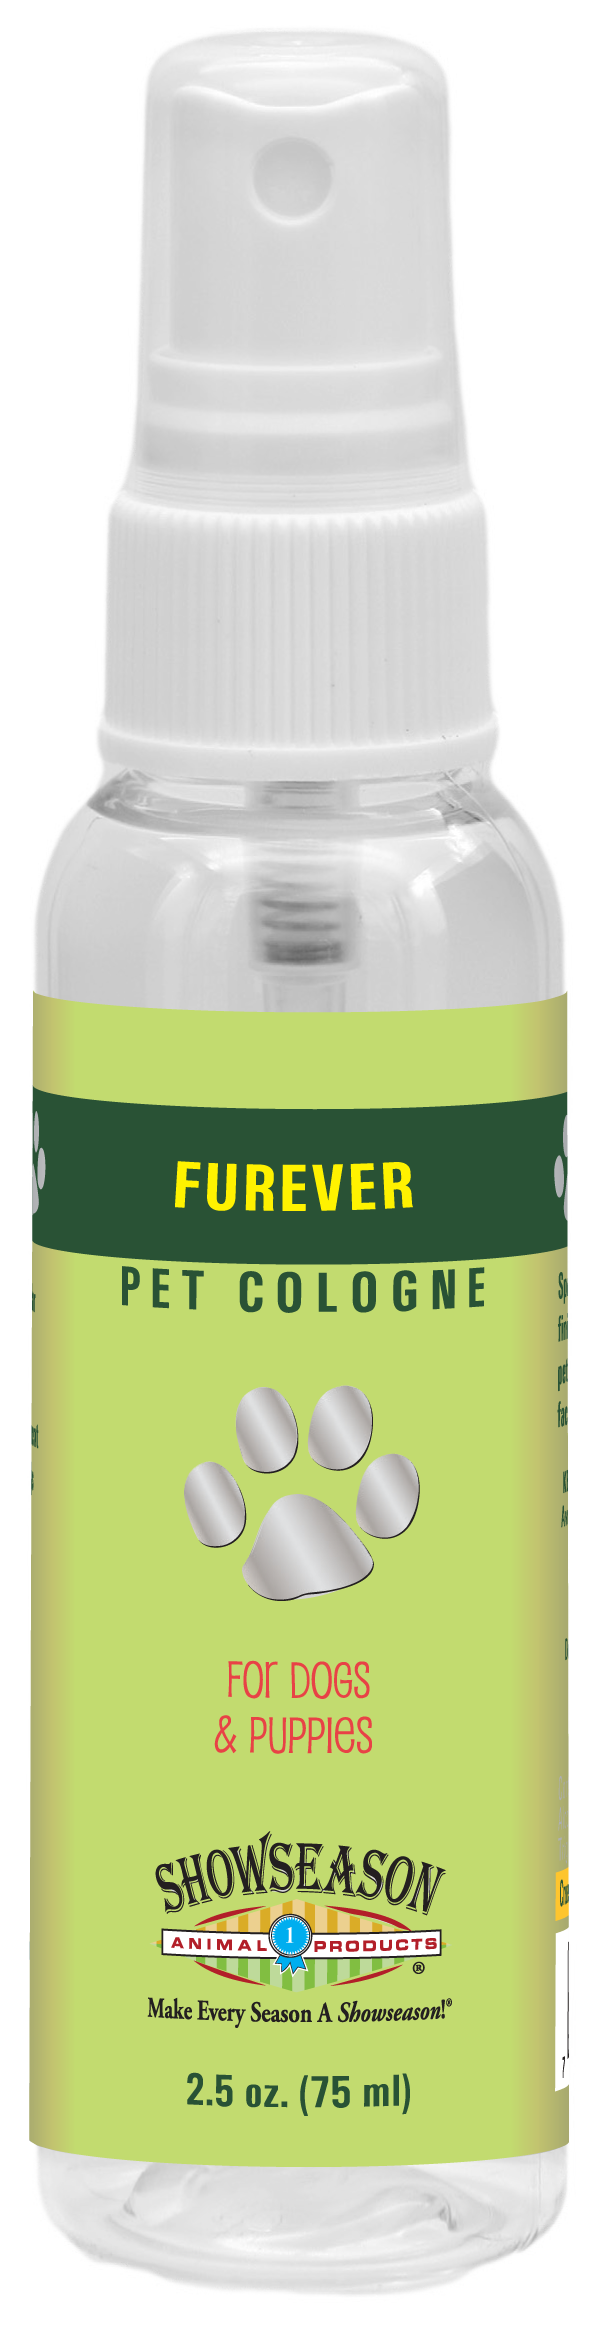 Furever Pet Cologne | Showseason®